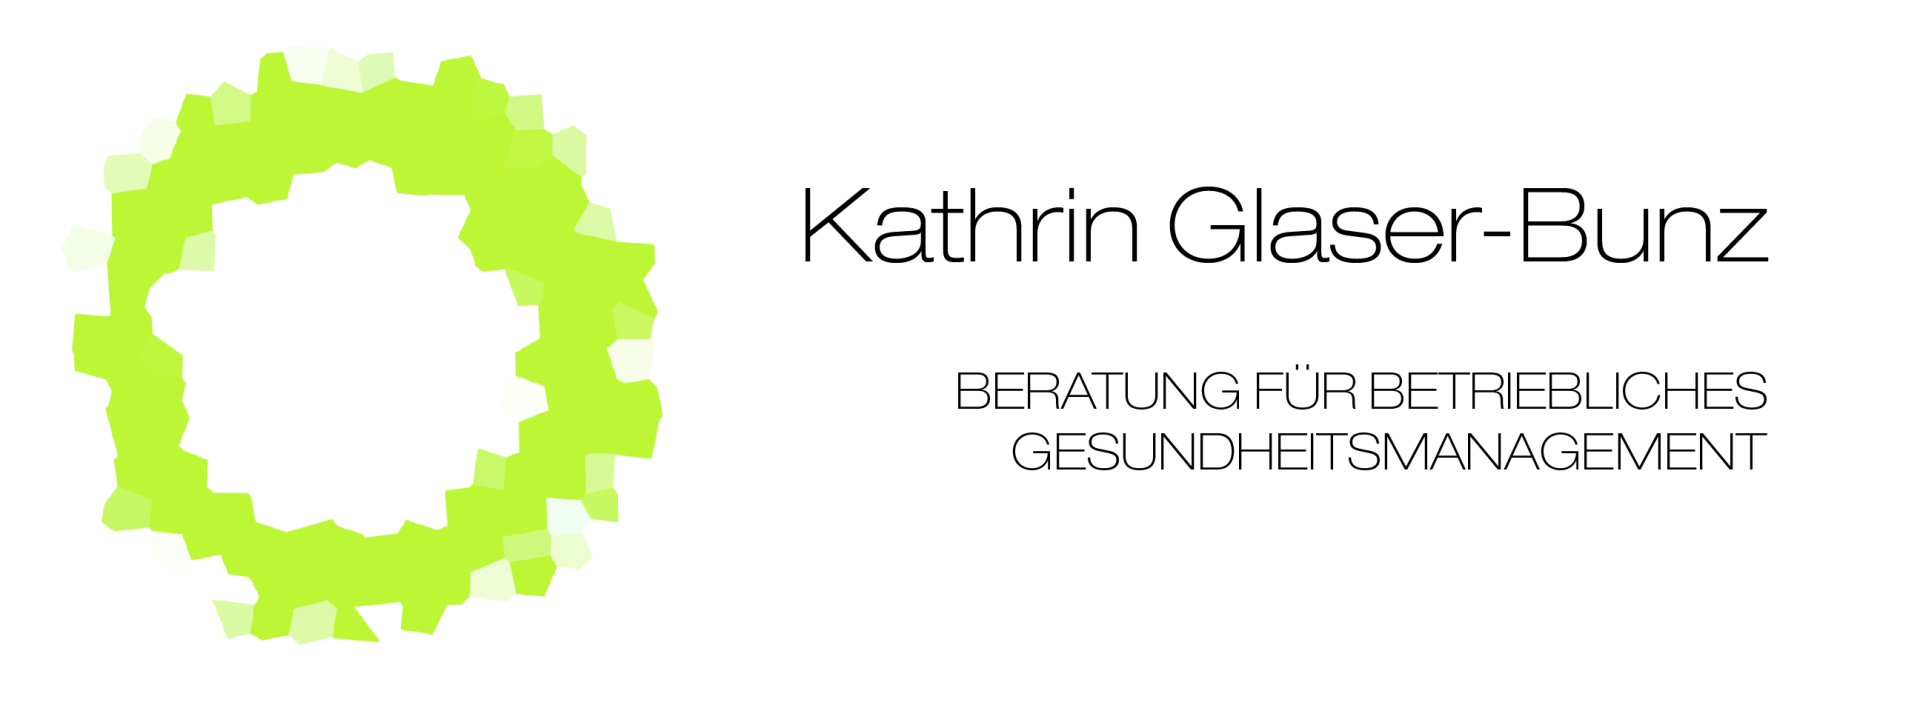 Kathrin Glaser-Bunz - Logo